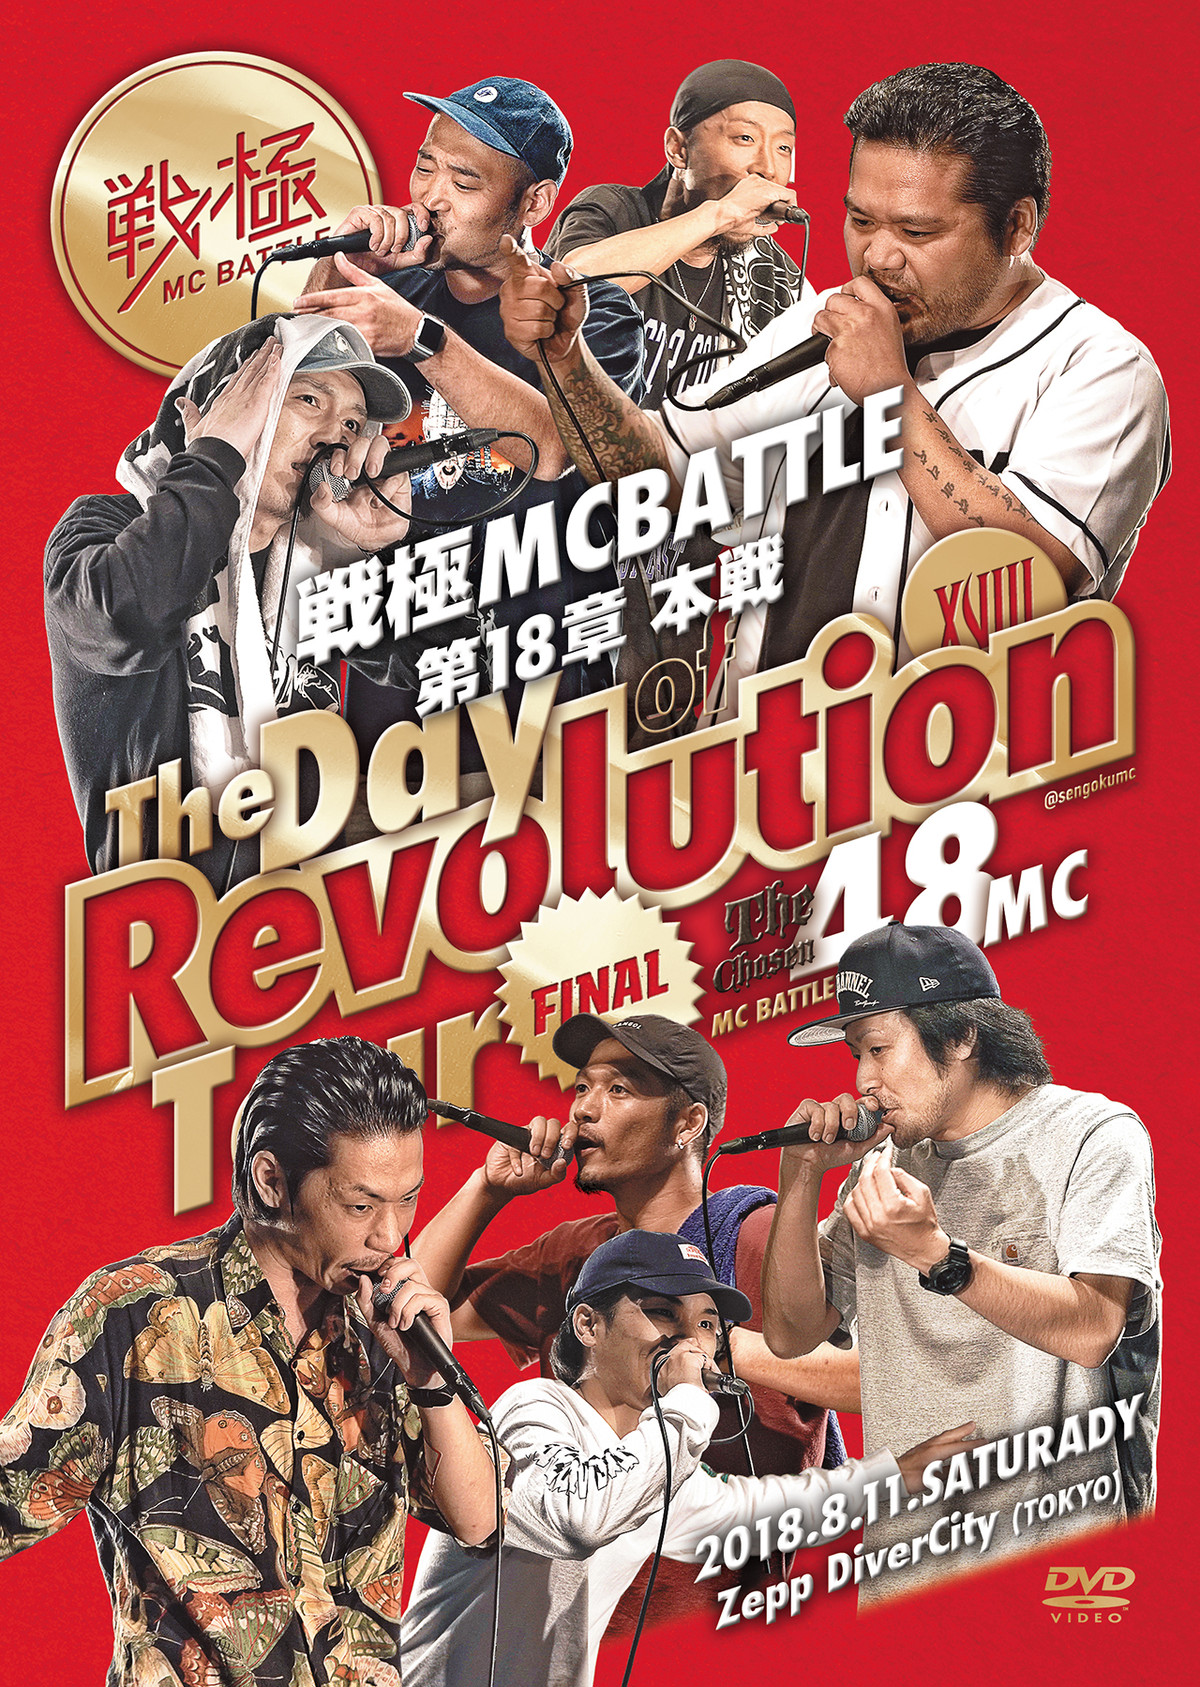 戦極mcbattle 第18章 The Day Of Revolution Tour 18 8 11完全収録dvd 戦極mcbattle On Line Shop